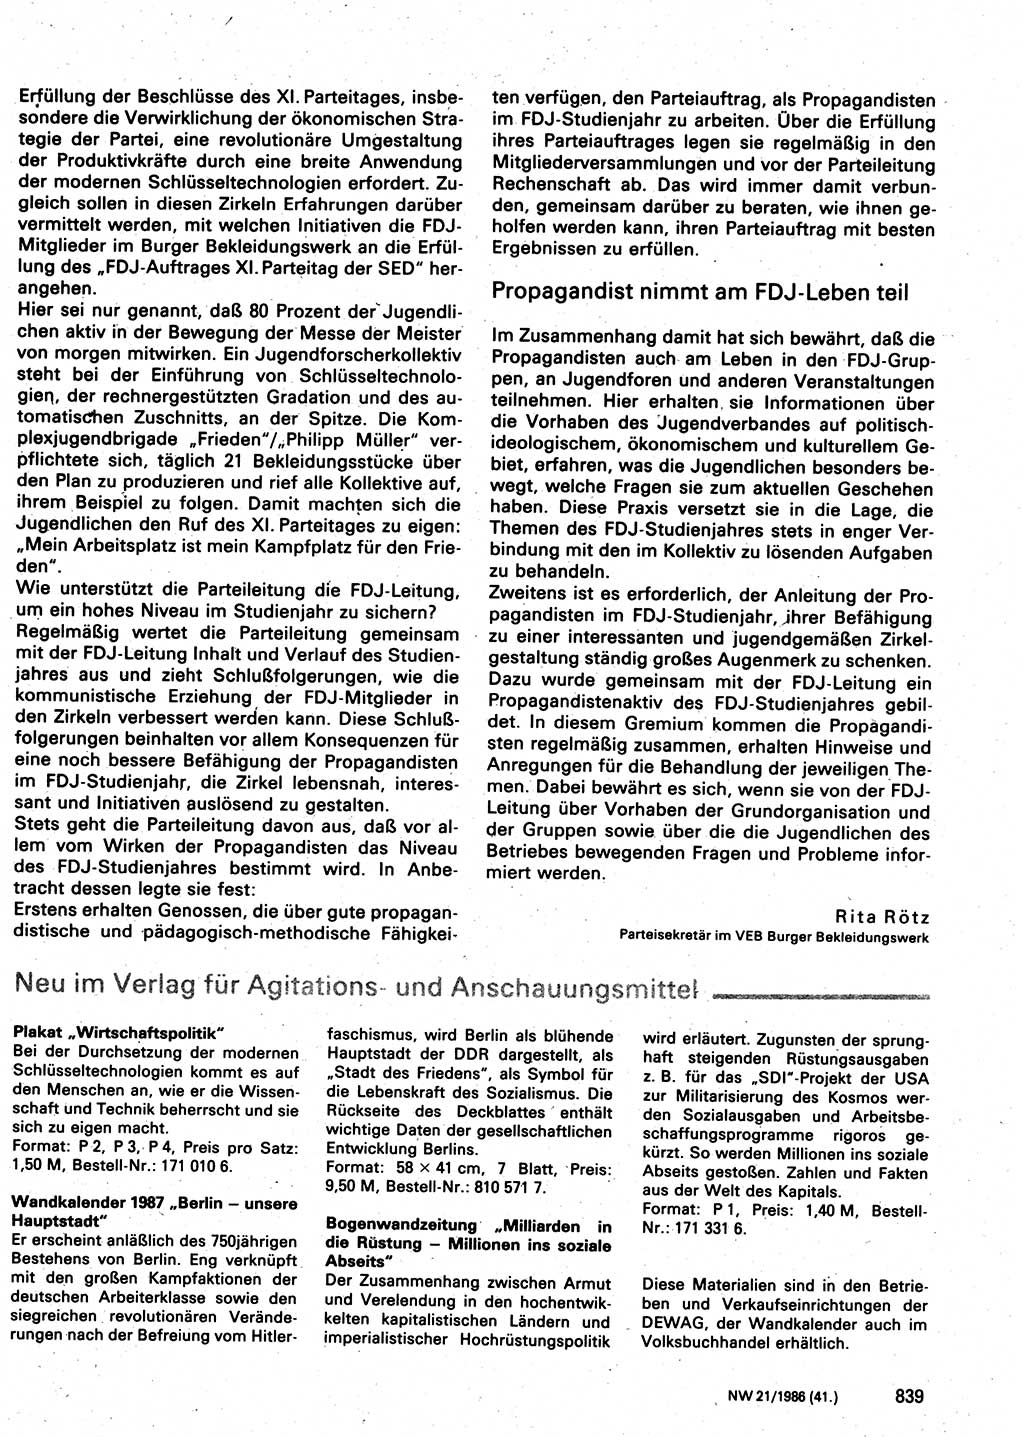 Neuer Weg (NW), Organ des Zentralkomitees (ZK) der SED (Sozialistische Einheitspartei Deutschlands) für Fragen des Parteilebens, 41. Jahrgang [Deutsche Demokratische Republik (DDR)] 1986, Seite 839 (NW ZK SED DDR 1986, S. 839)